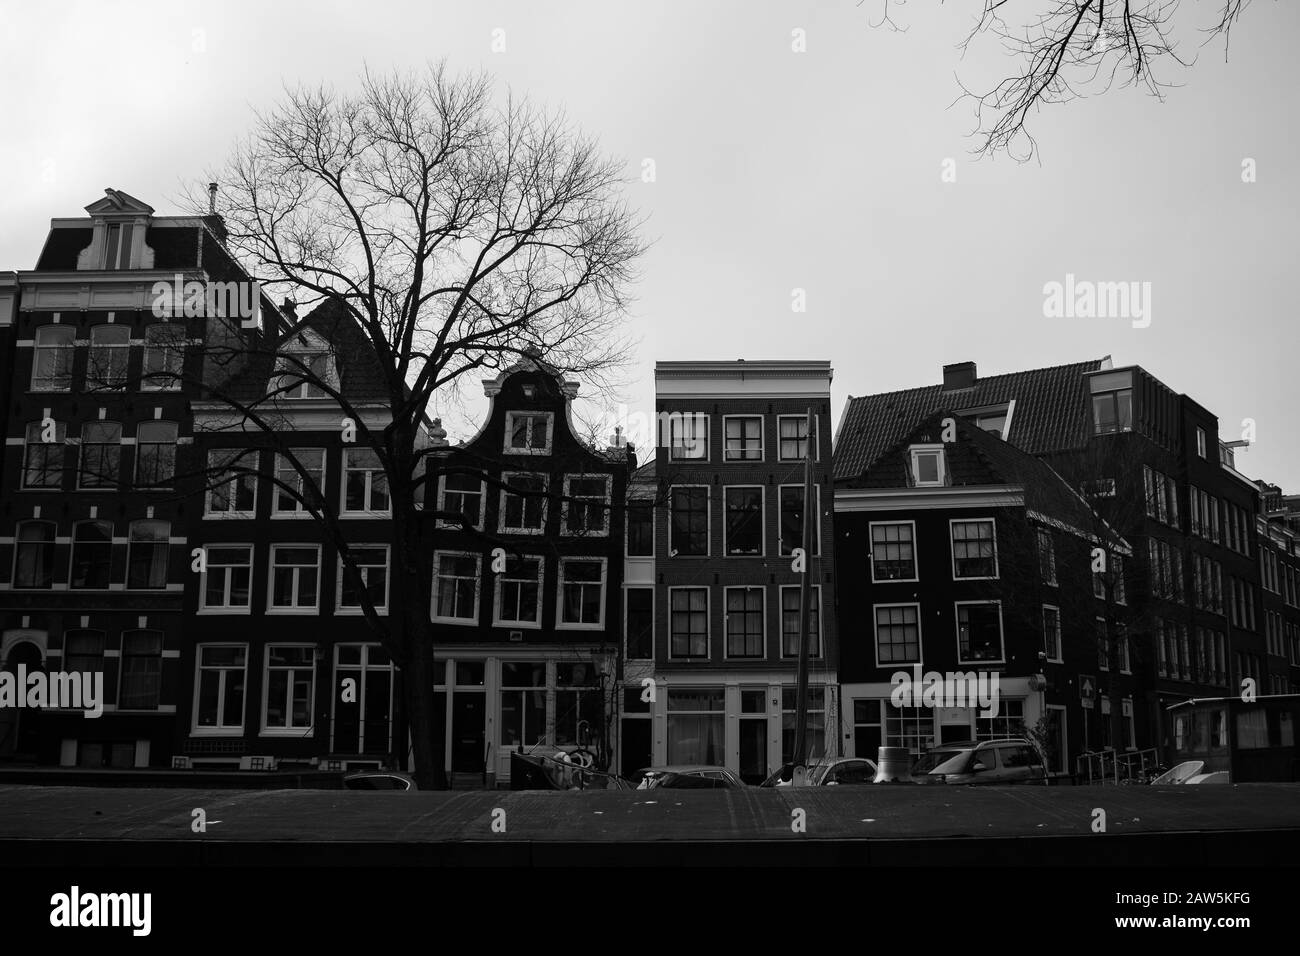 Amsterdam - 26/1/2020 - EINE Reihe von Gebäuden mit Coffeeshop 137 auf der rechten Seite, die das Wesen Amsterdams im Winter erfassen. Stockfoto